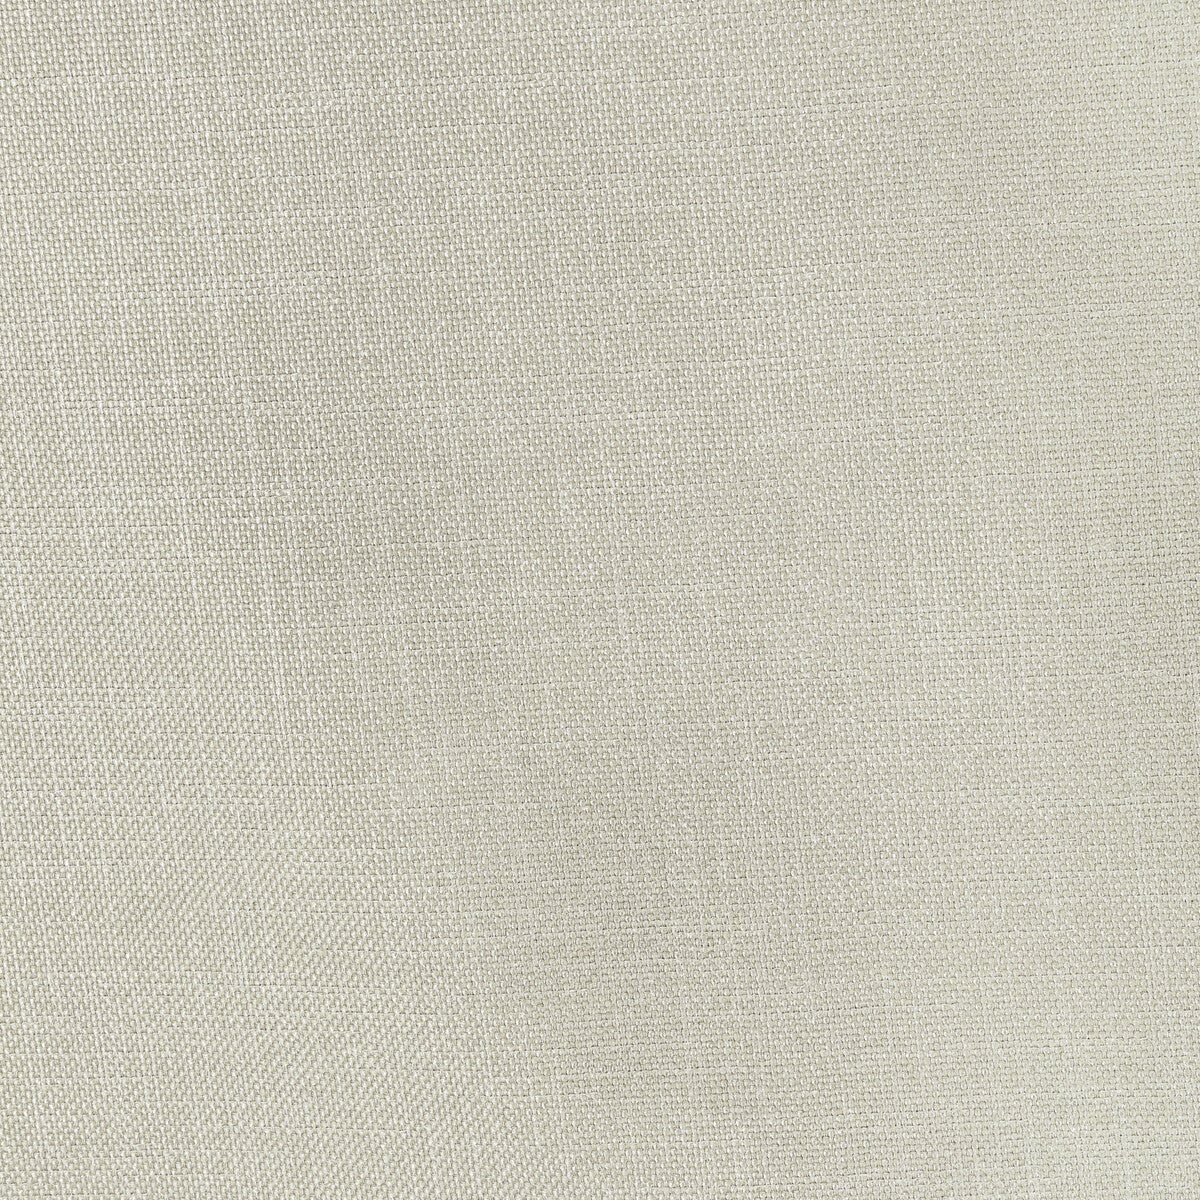 Kravet Basics fabric in 33120-1016 color - pattern 33120.1016.0 - by Kravet Basics